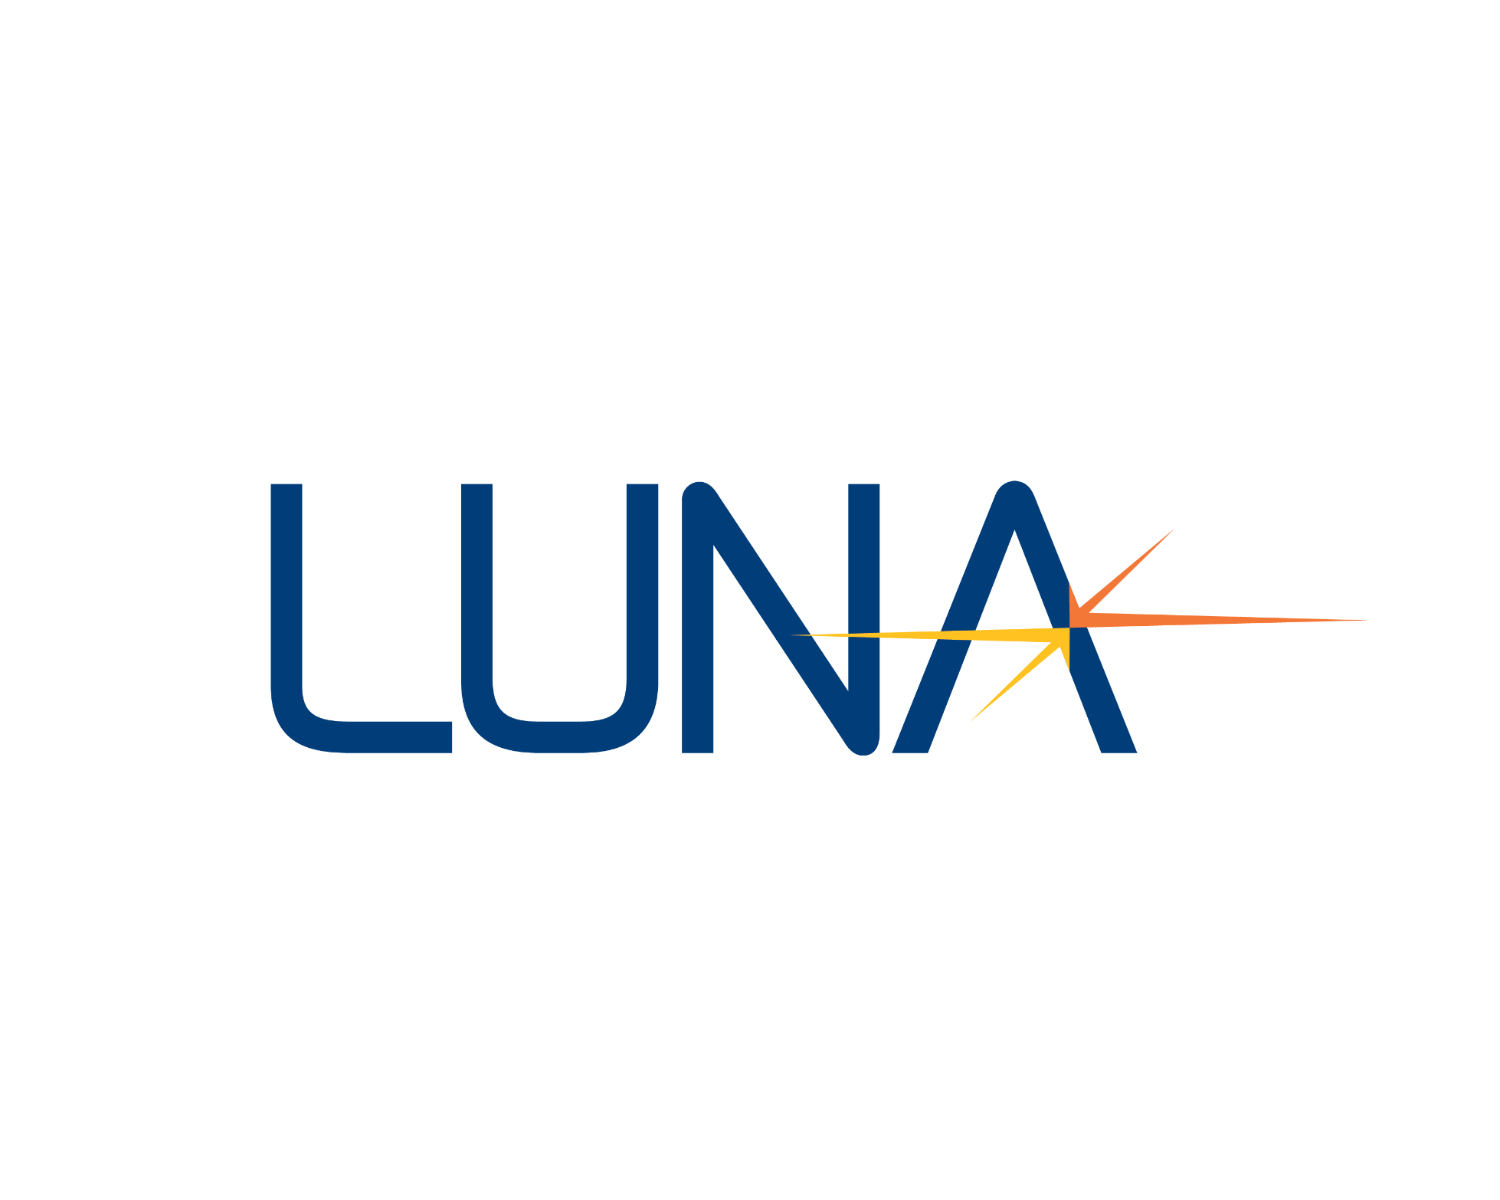 Luna Innovations